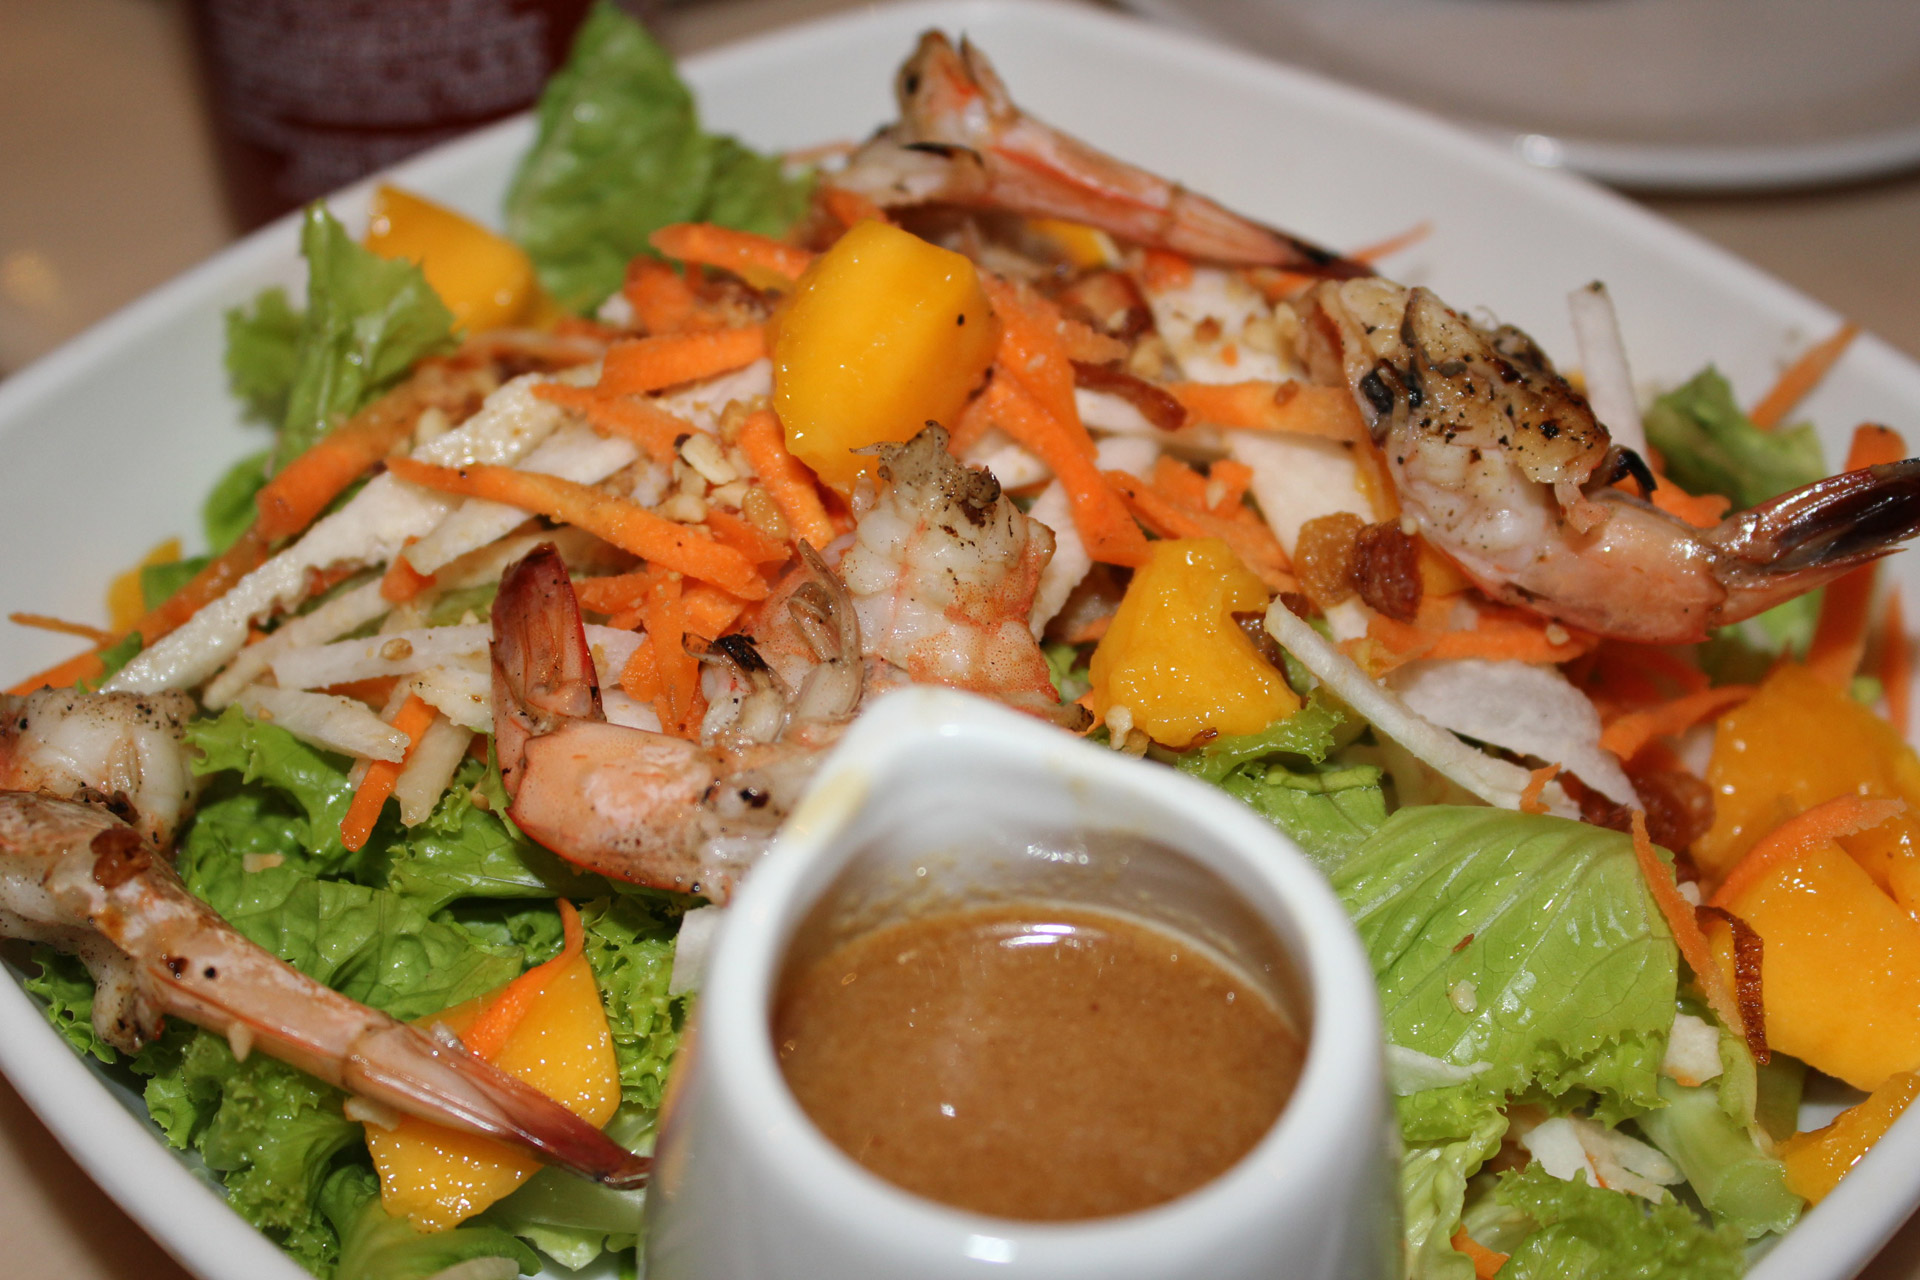 Shrimp Orzo Salad (Low-Fat)